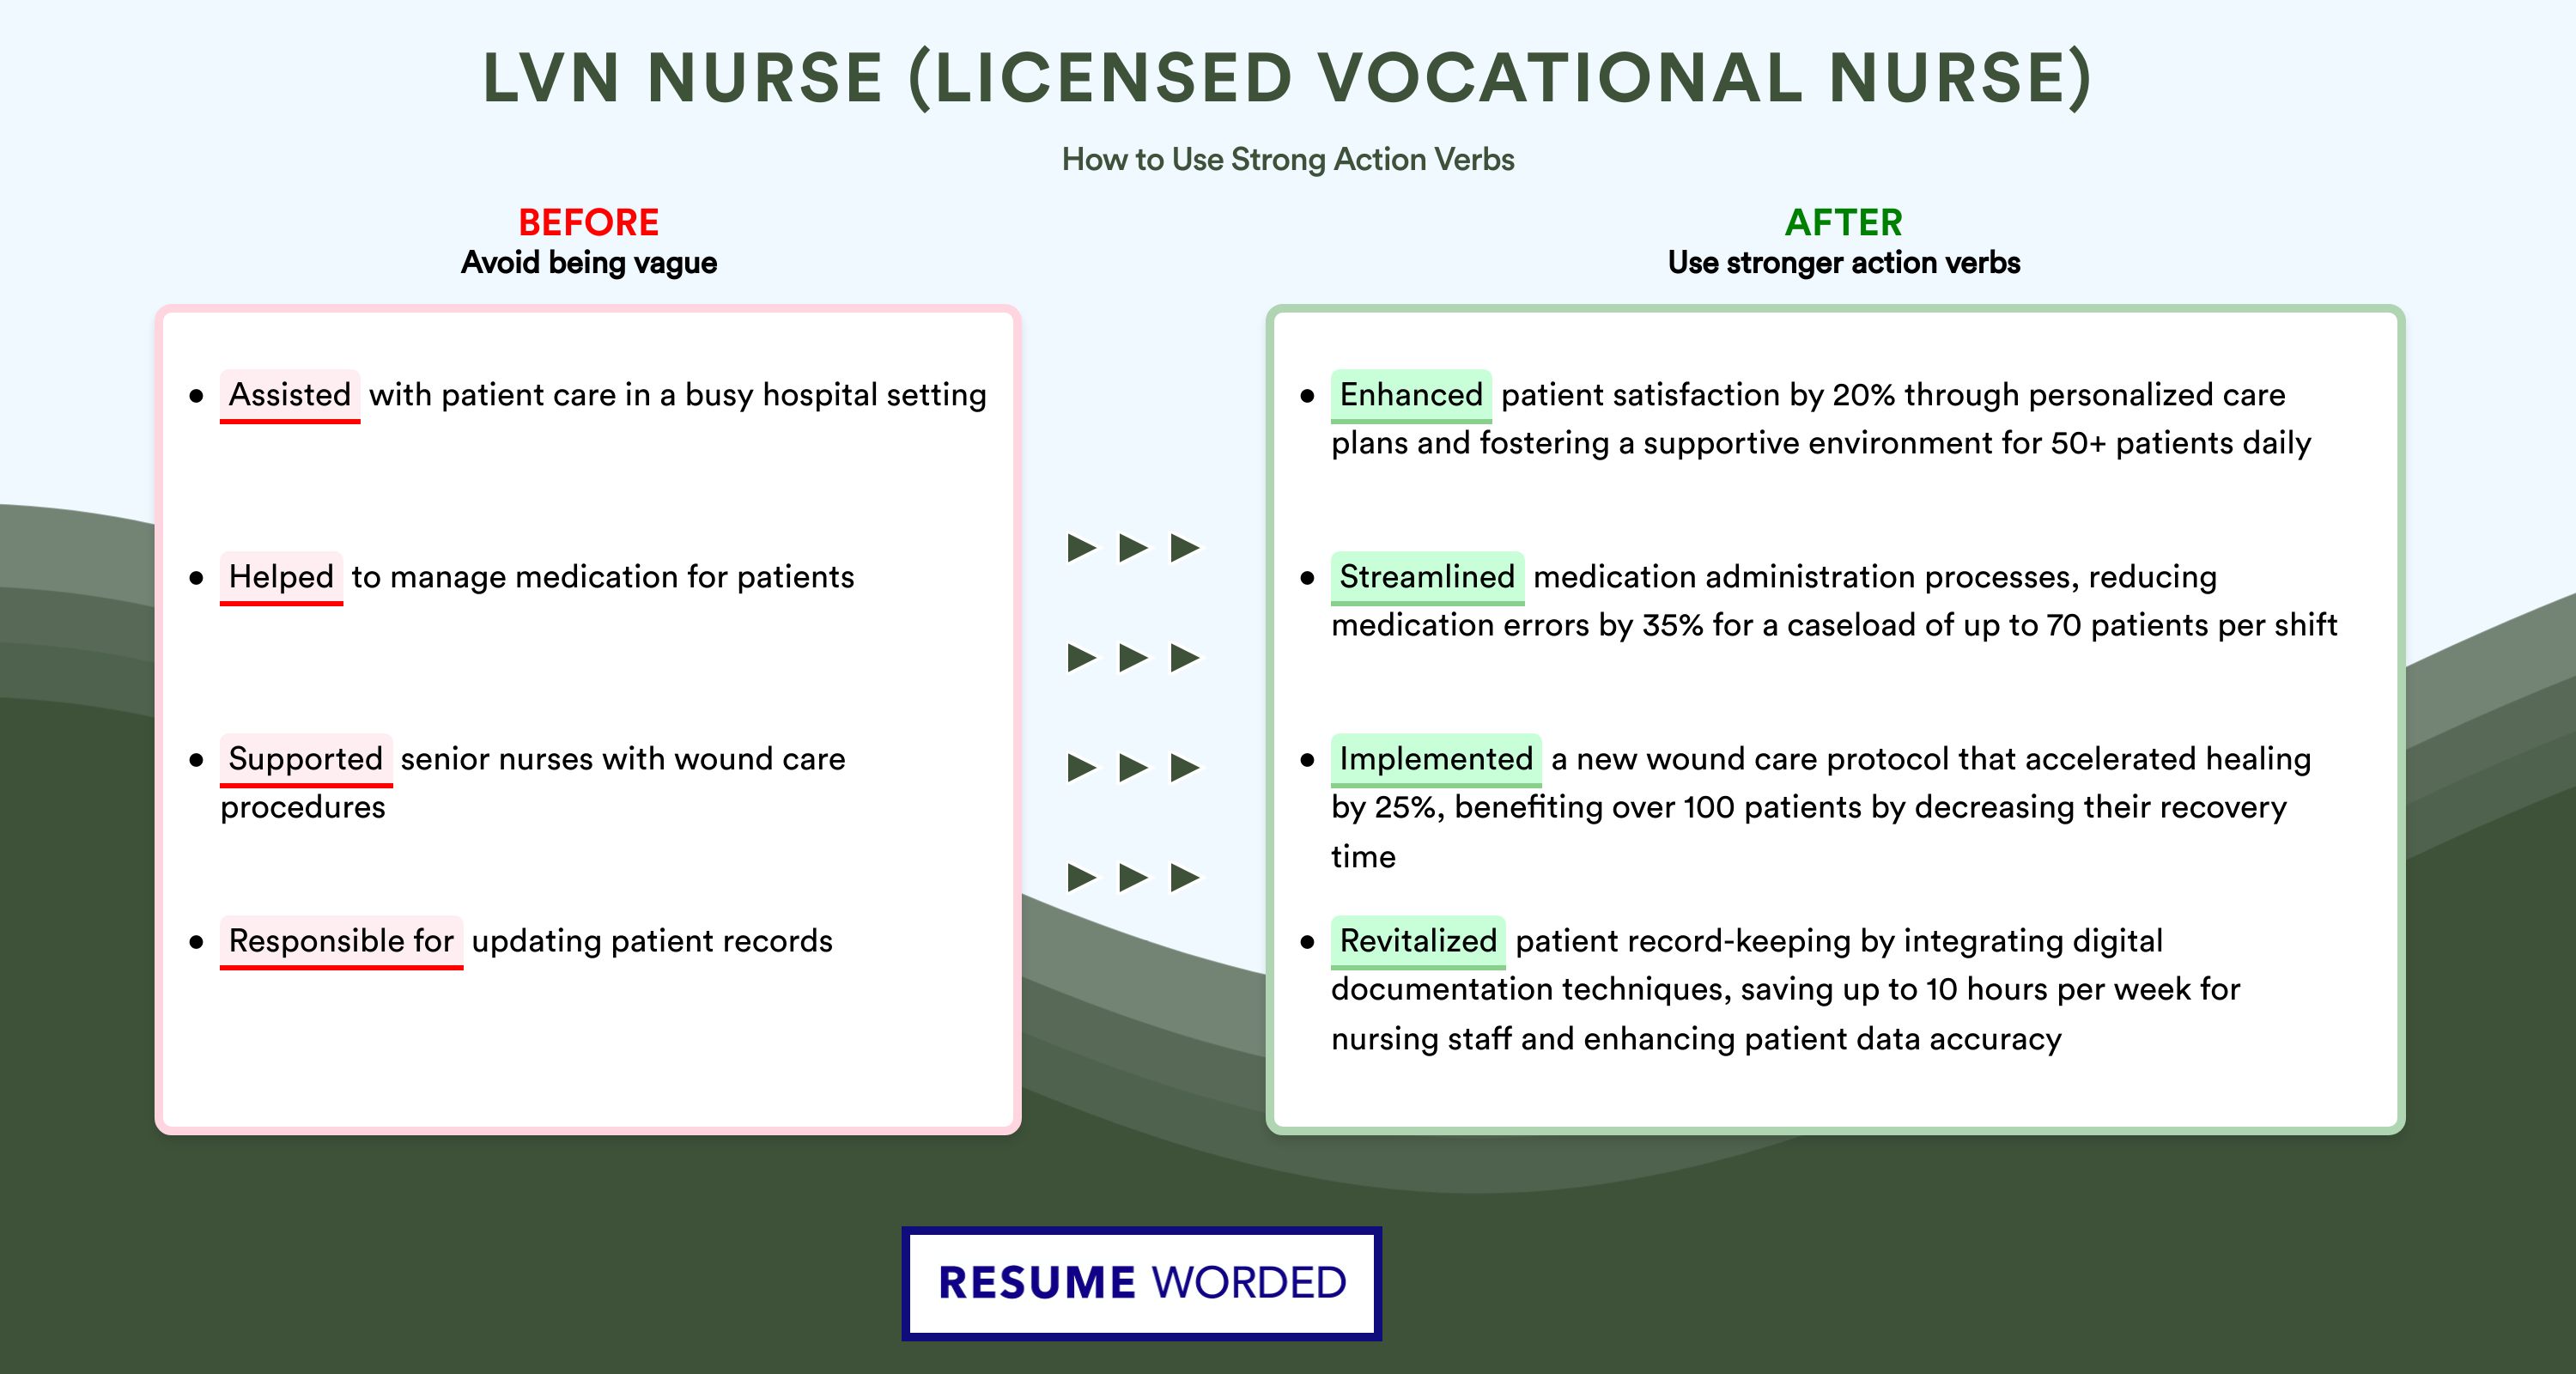 Action Verbs for LVN Nurse (Licensed Vocational Nurse)